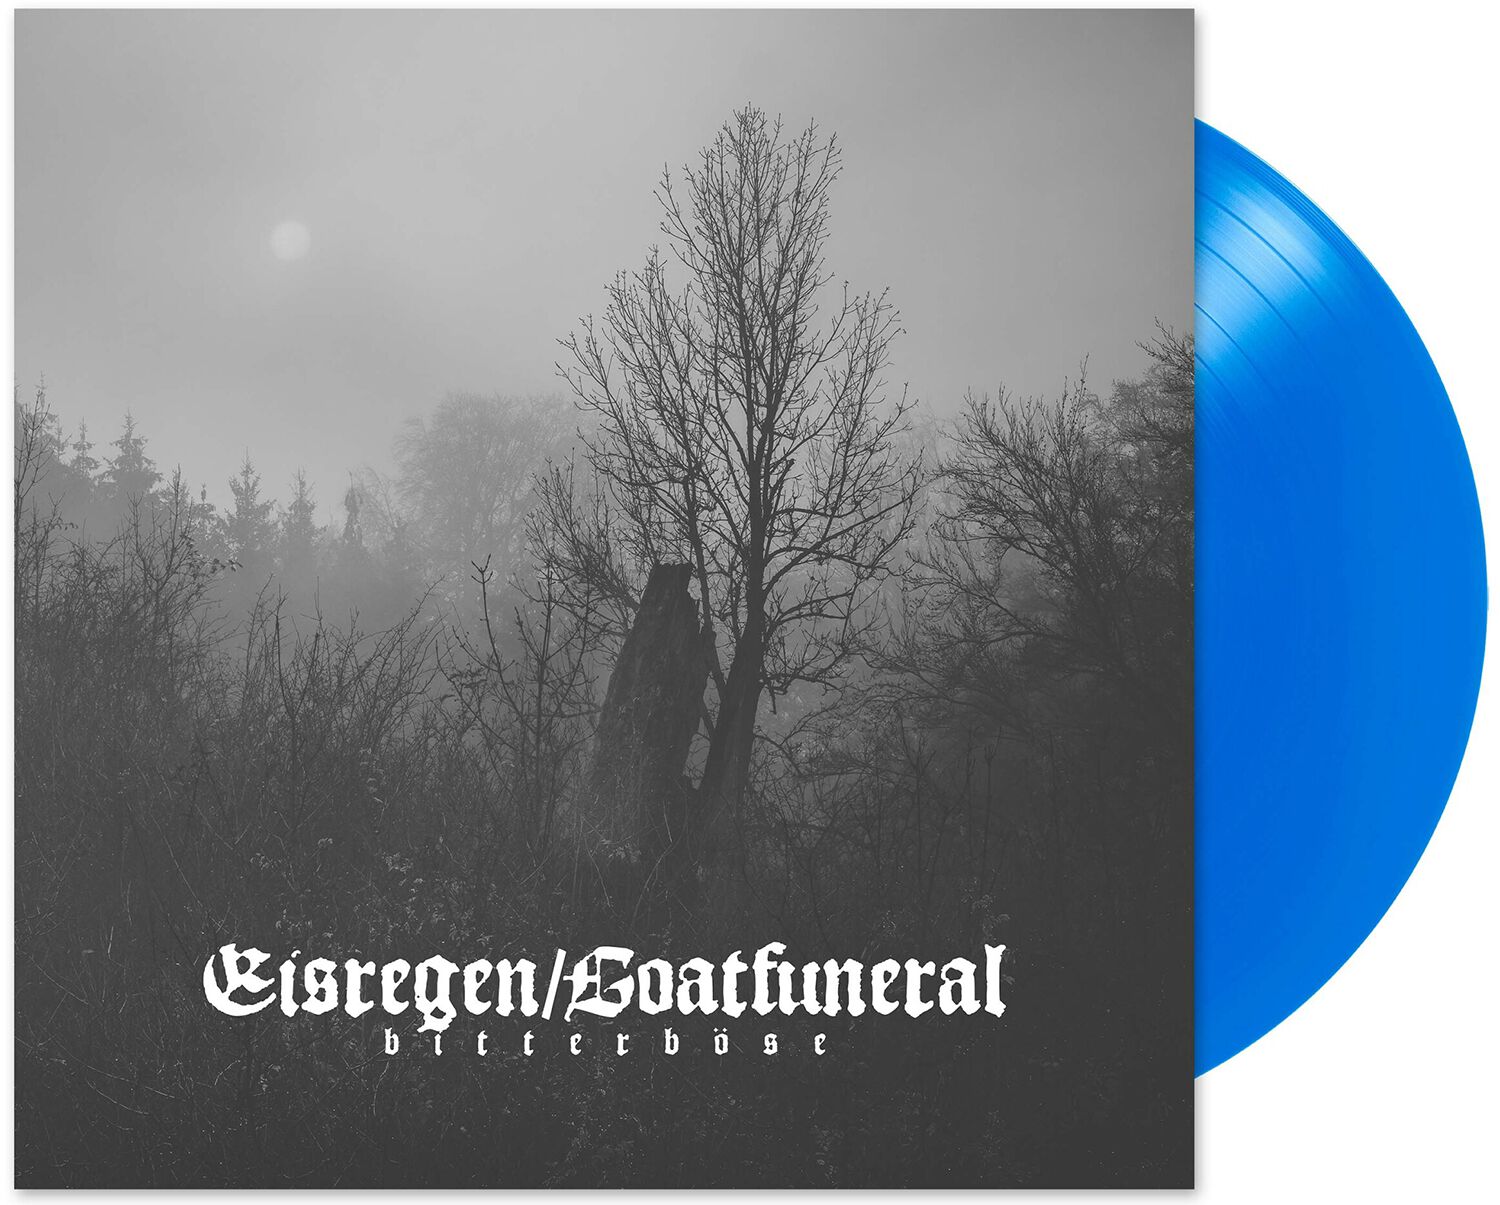 bitterböse von Eisregen / Goatfuneral - LP (Coloured, Limited Edition, Standard)